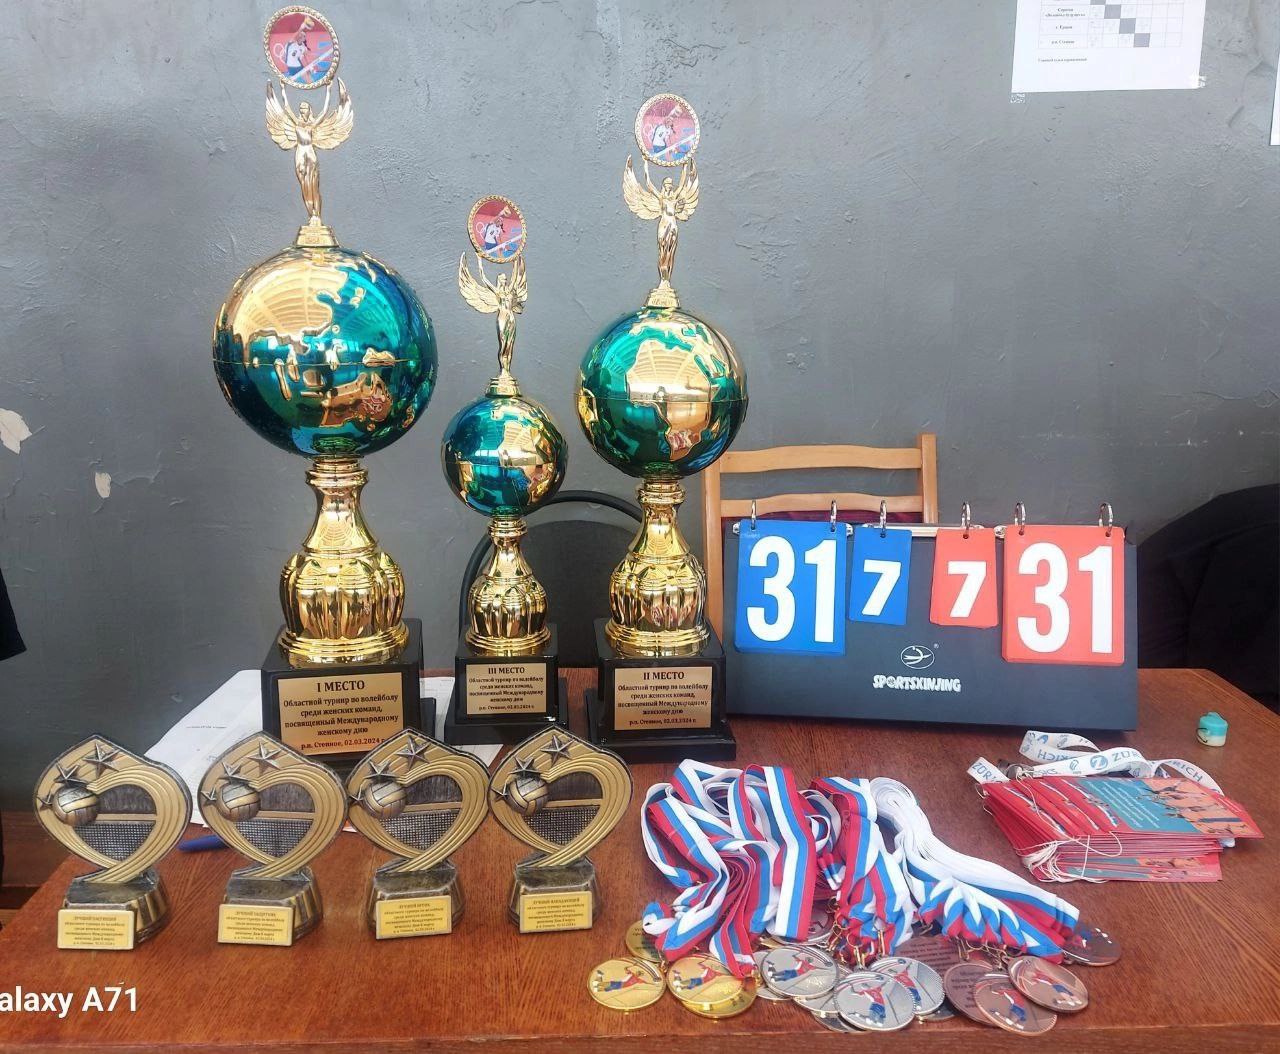 При поддержке администрации района в спортивной школе проведен областной турнир по волейболу